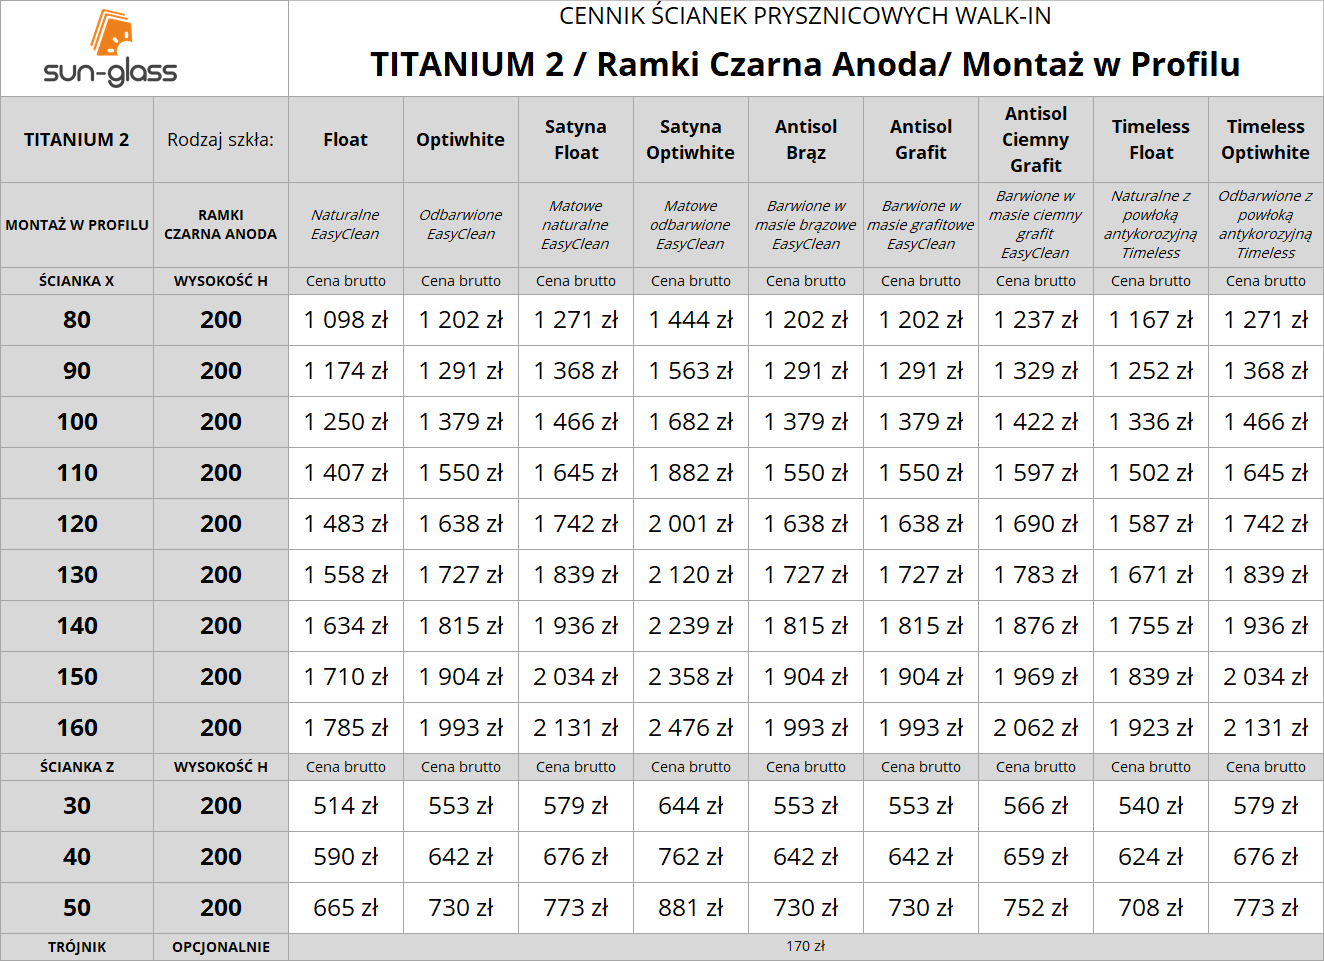 TITANIUM 2 / RAMKI